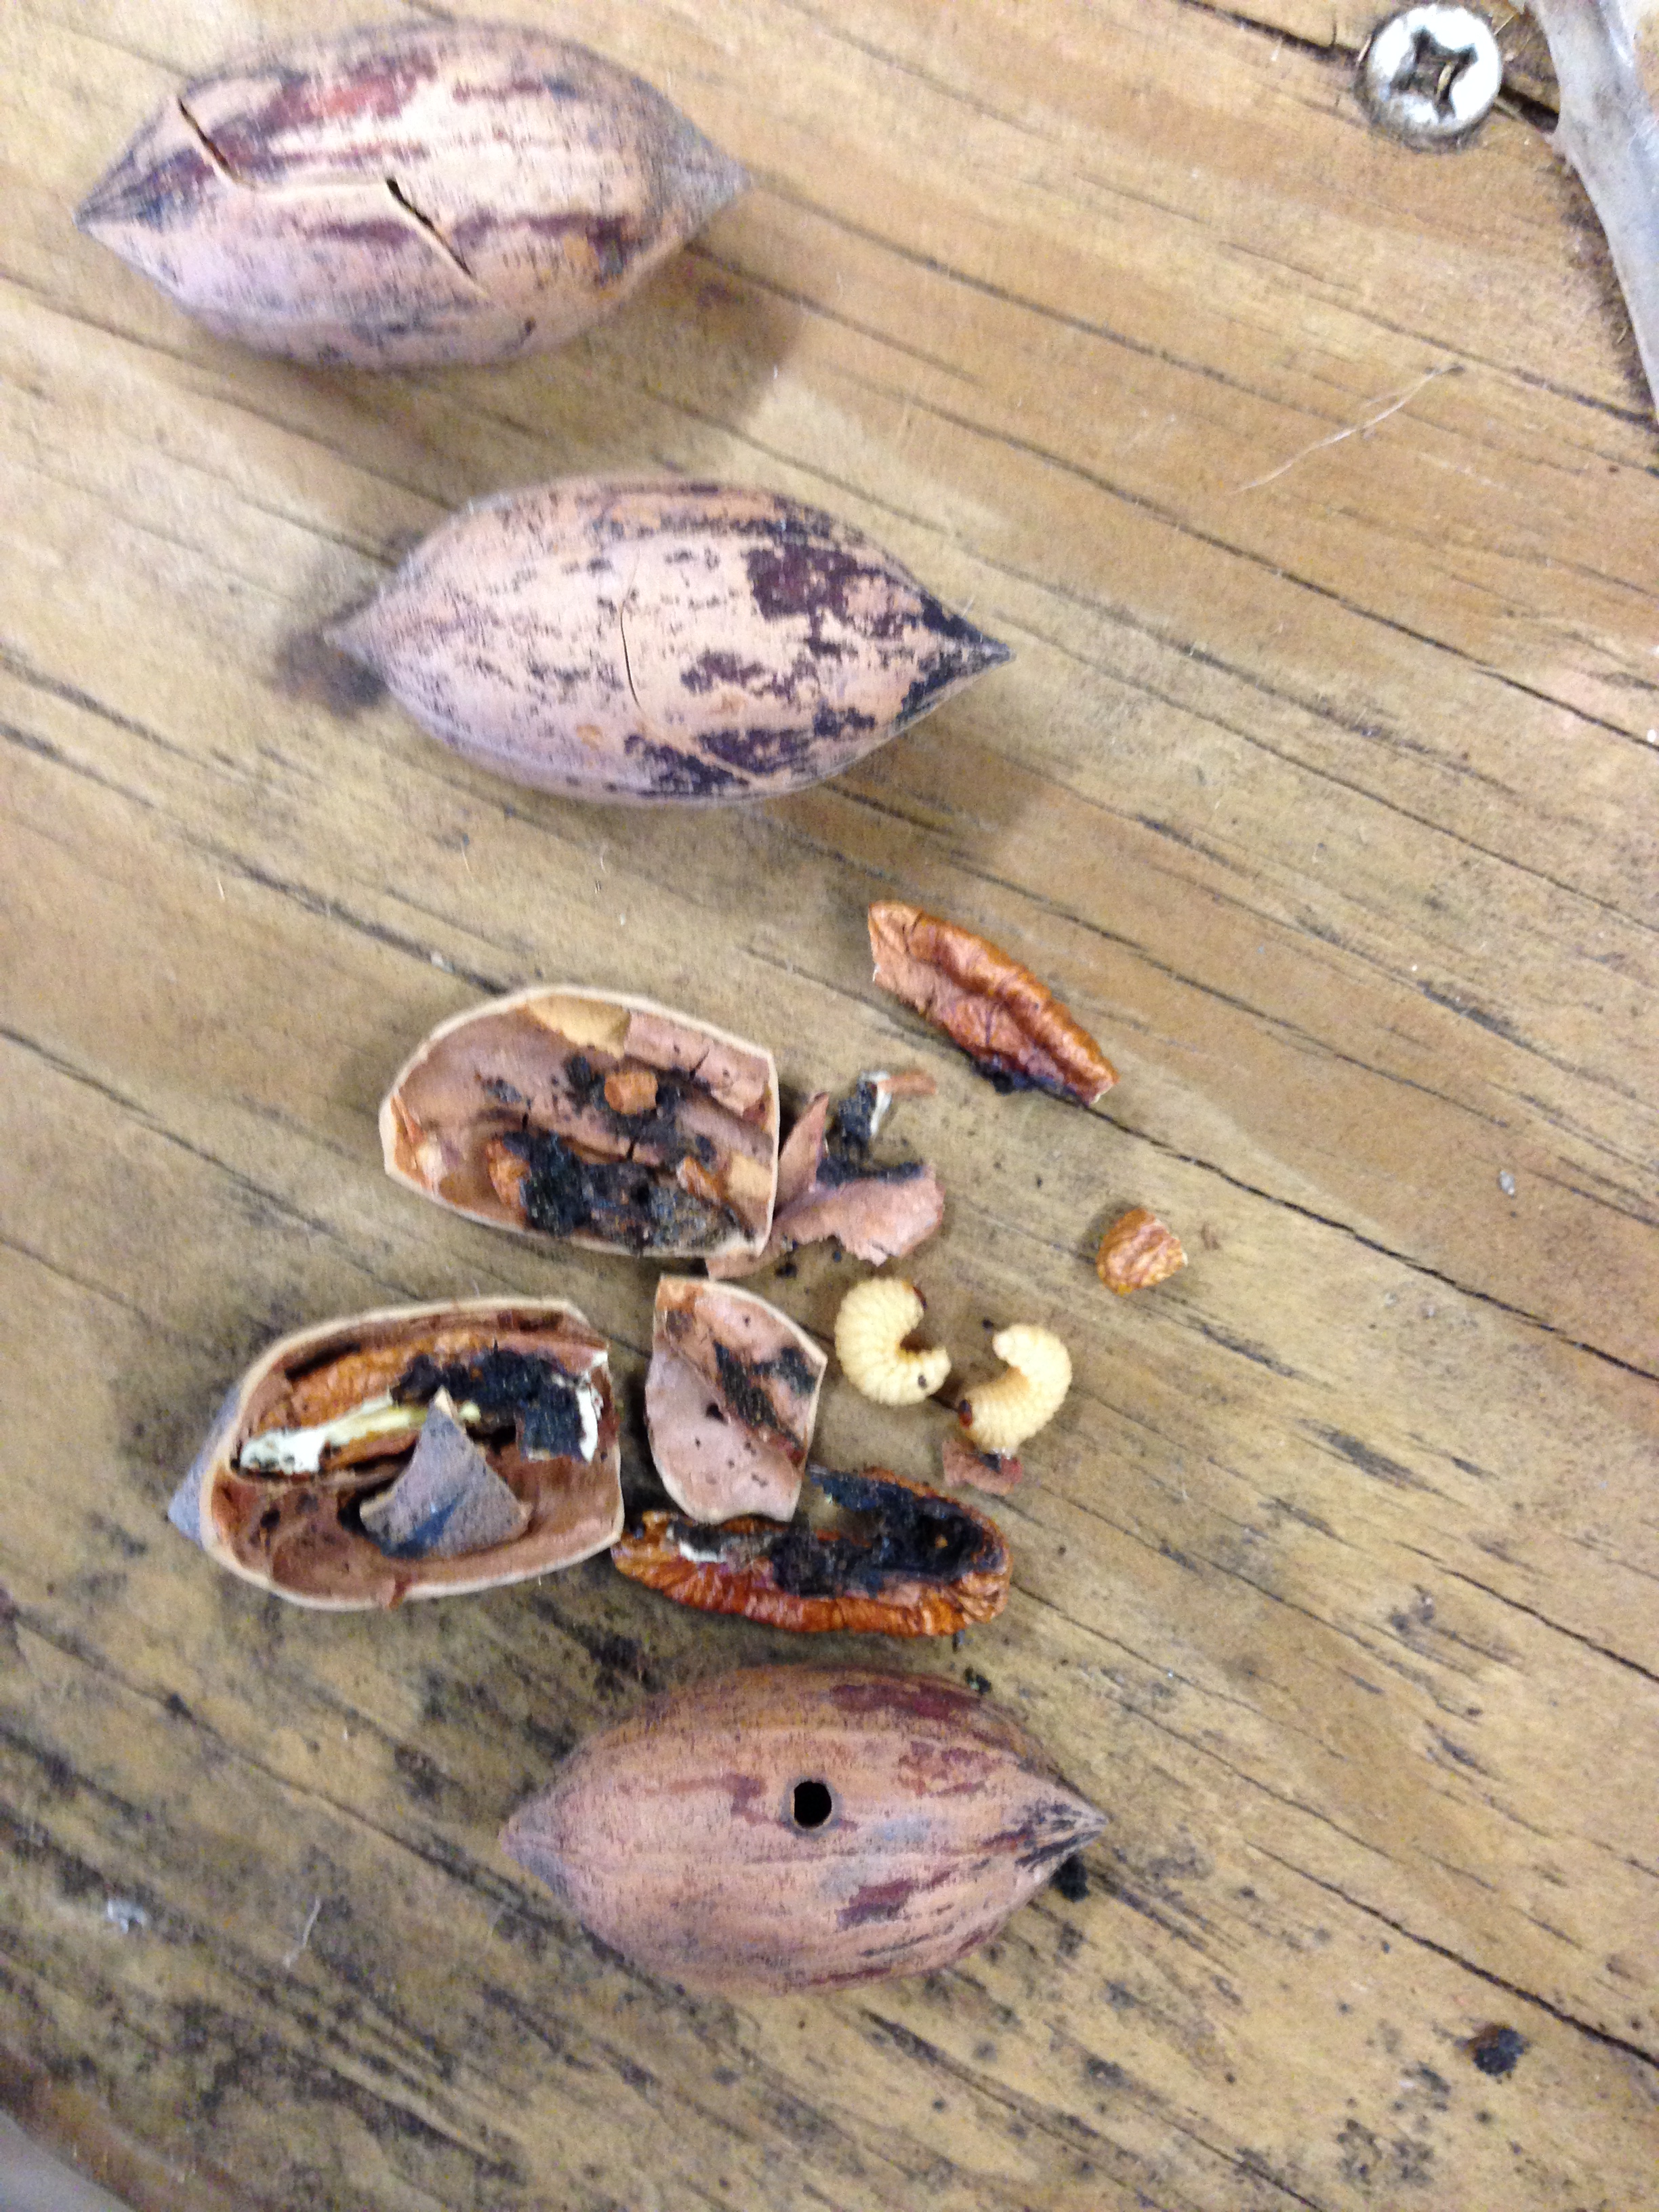 Pecan weevil feeding in Caddo nut